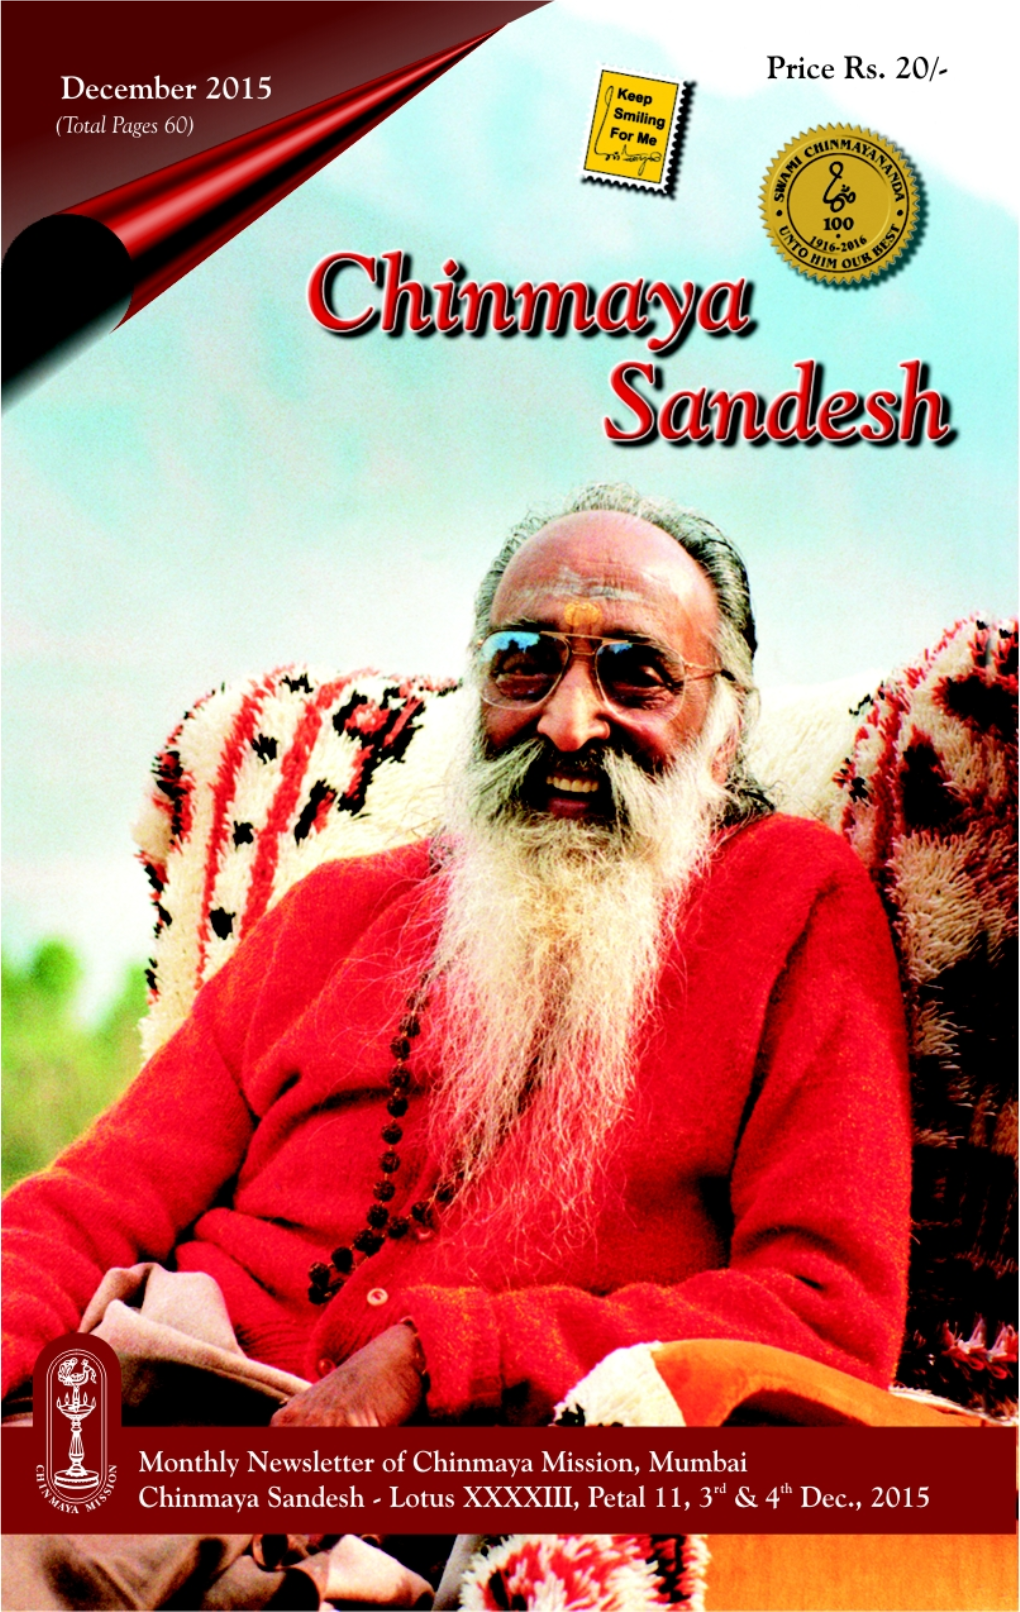 Chinmaya Sandesh December 2015 Spiritual Monthly Bulletin of Mumbai